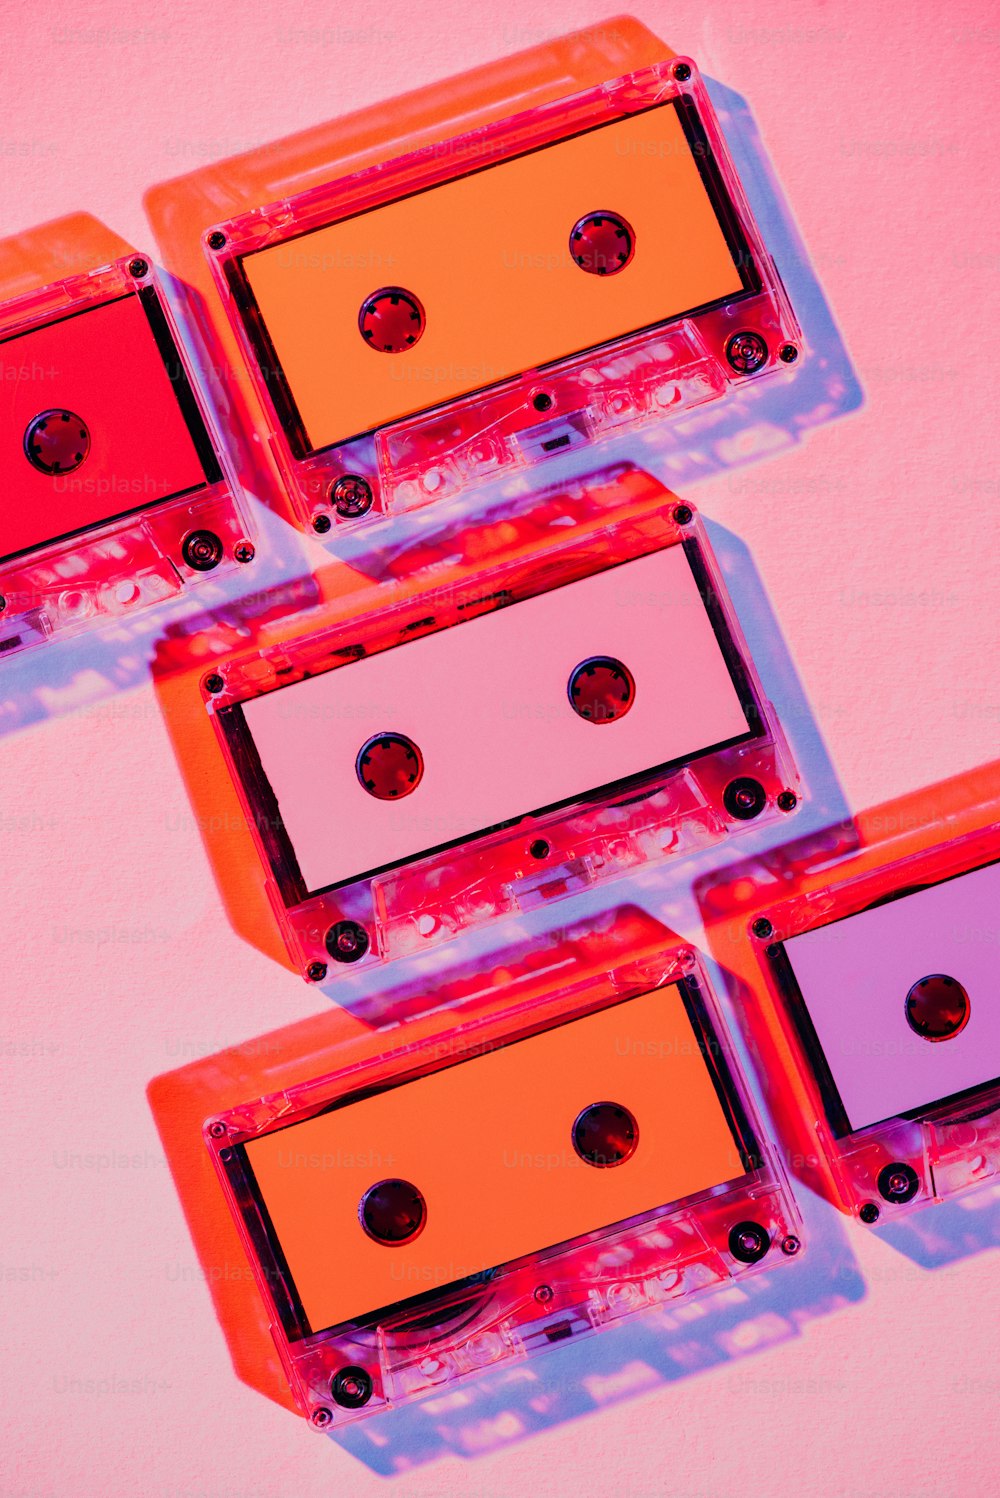 imagem tonificada de de áudio retro coloridas no fundo cor-de-rosa